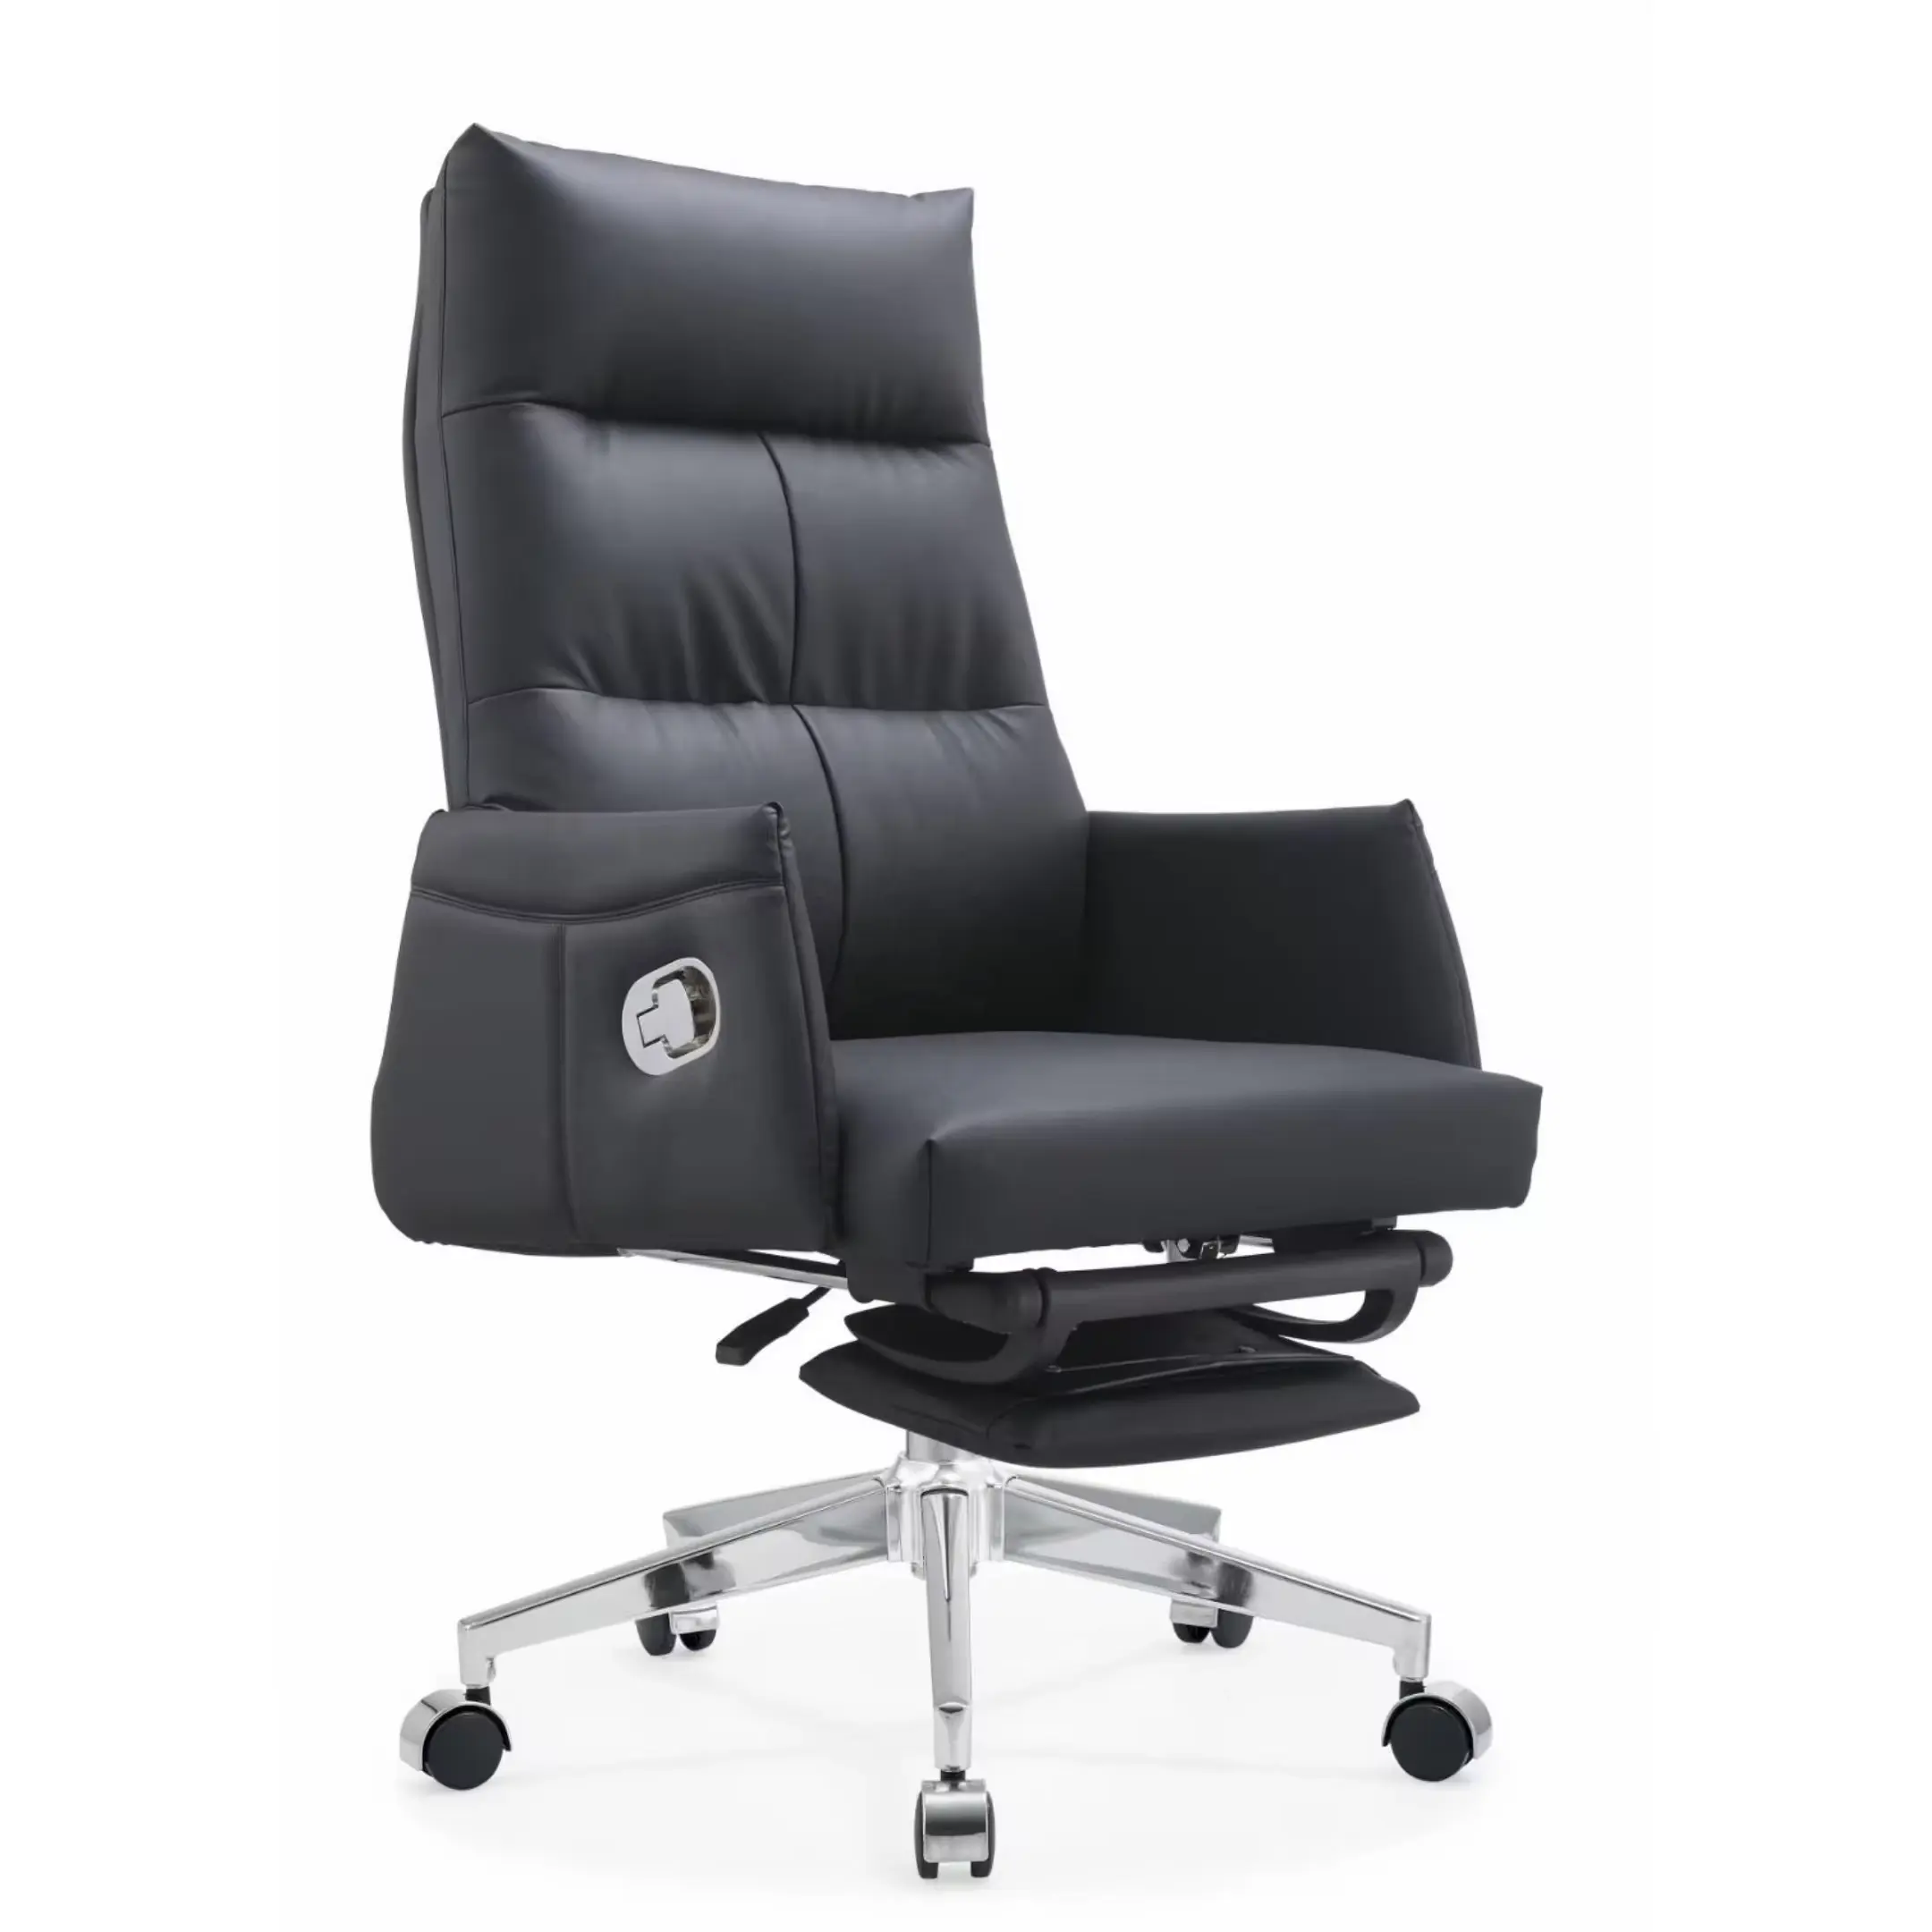 Sillas ejecutivas cómodas Silla de escritorio barata al por mayor silla de oficina de cuero PU sillas giratorias de oficina muebles de oficina